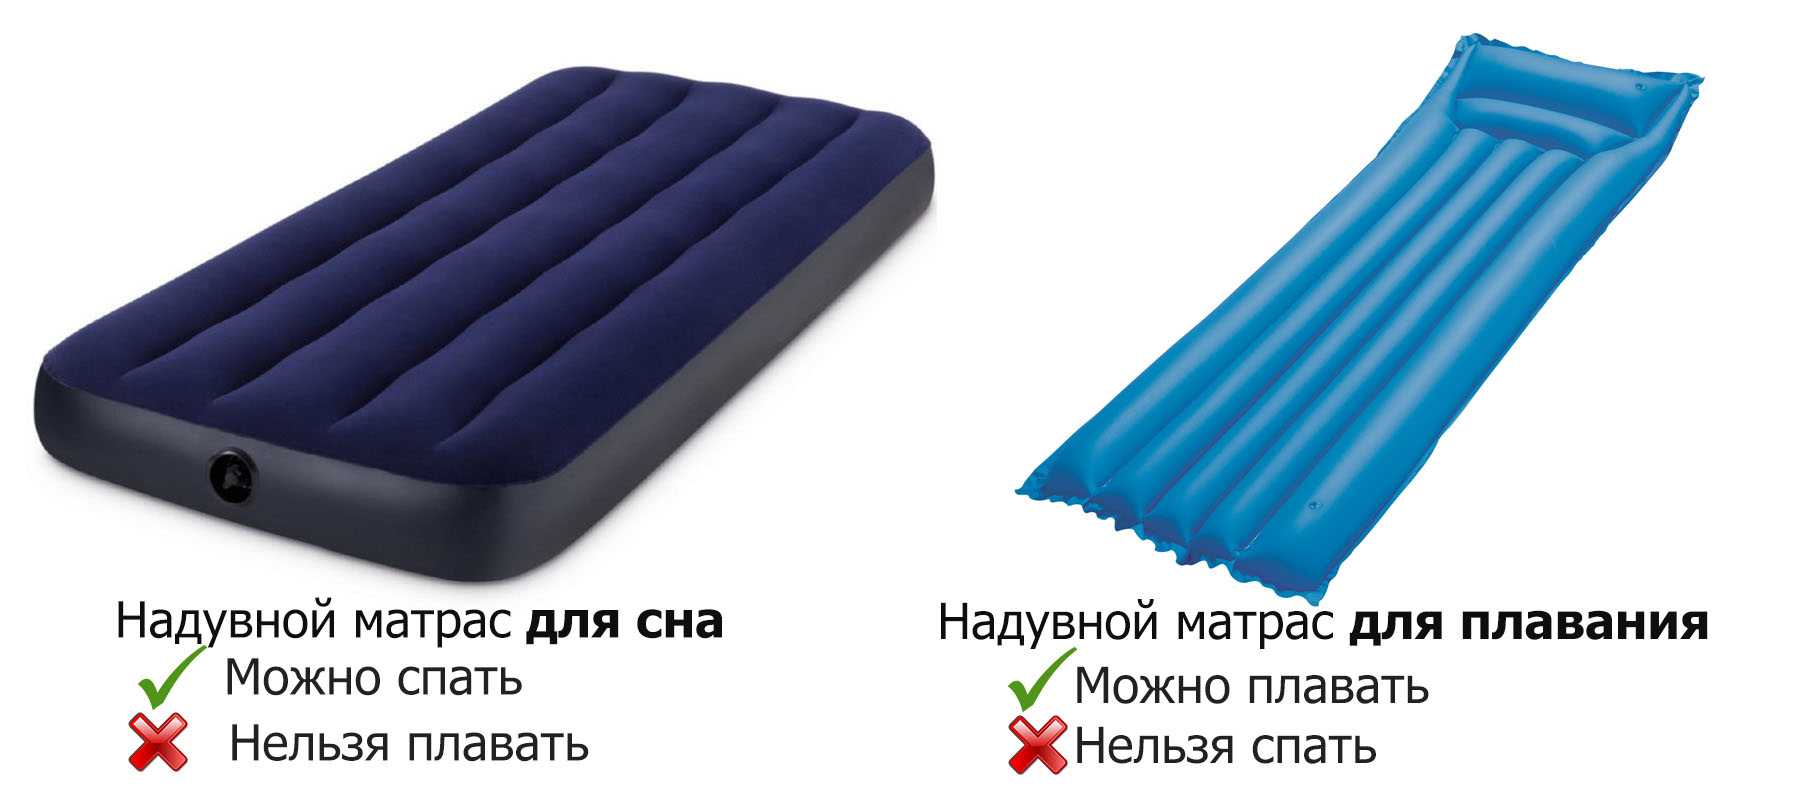 Топ-10 надувных матрасов для сна: какой лучше выбрать по мнению специалистов